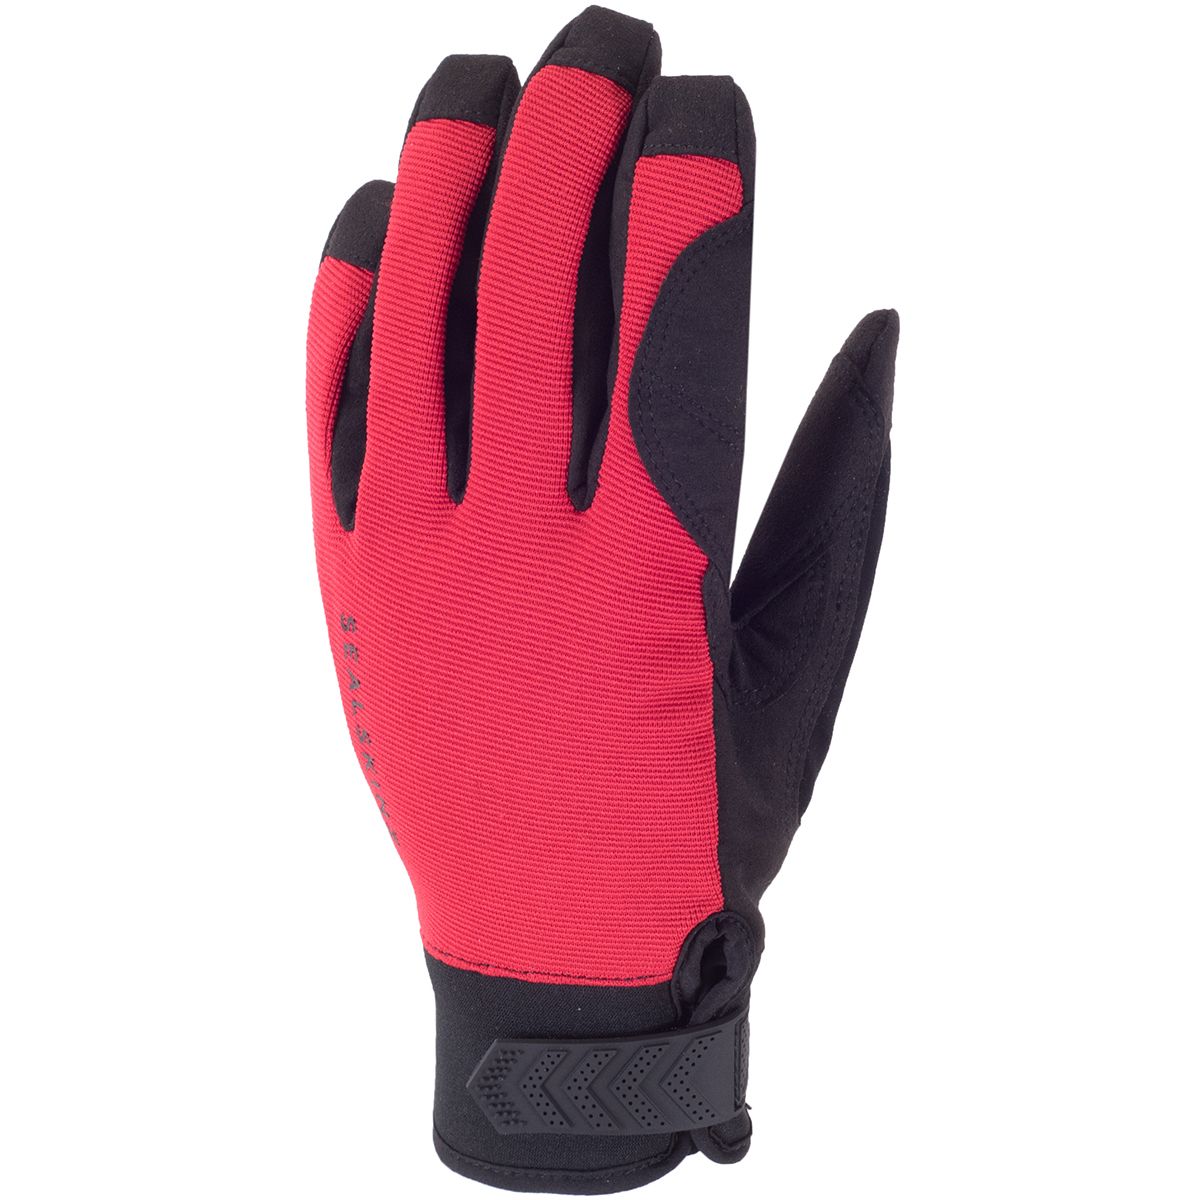 SealSkinz Dragon Eye Road Glove - Men's